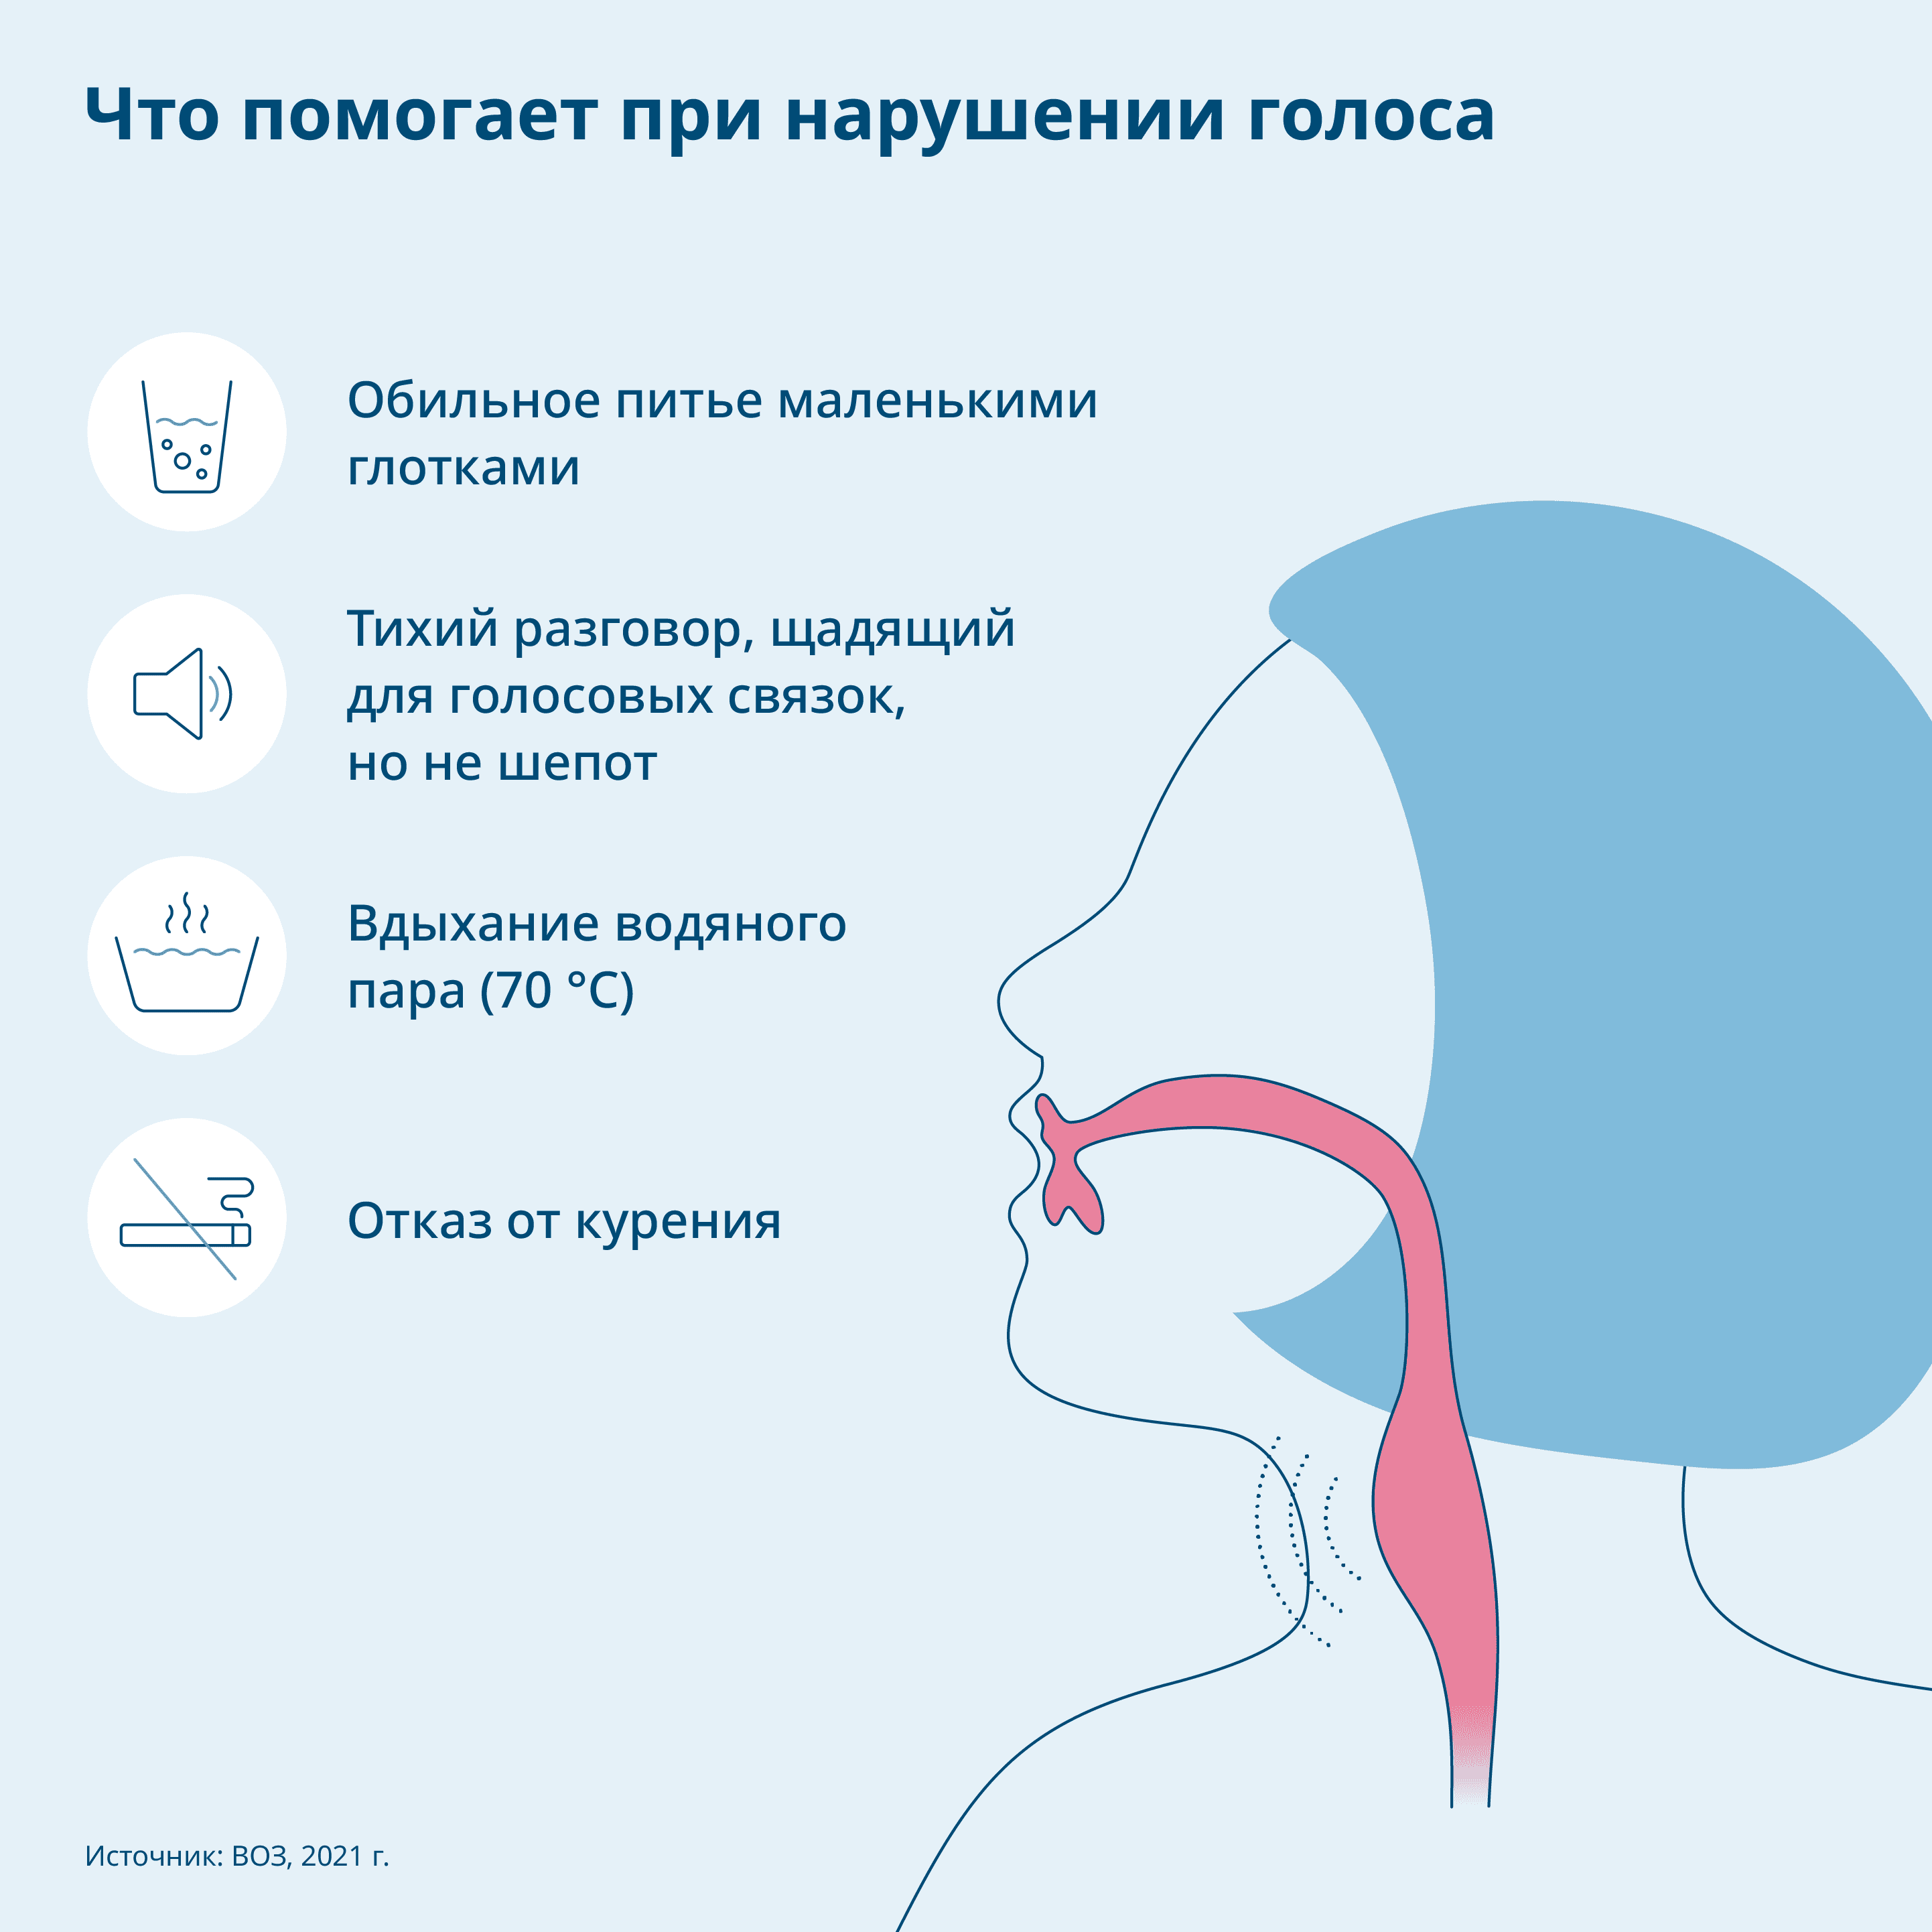 Графика: Советы, как справиться с нарушением голоса, можно увидеть область рта и горла в человеческом теле